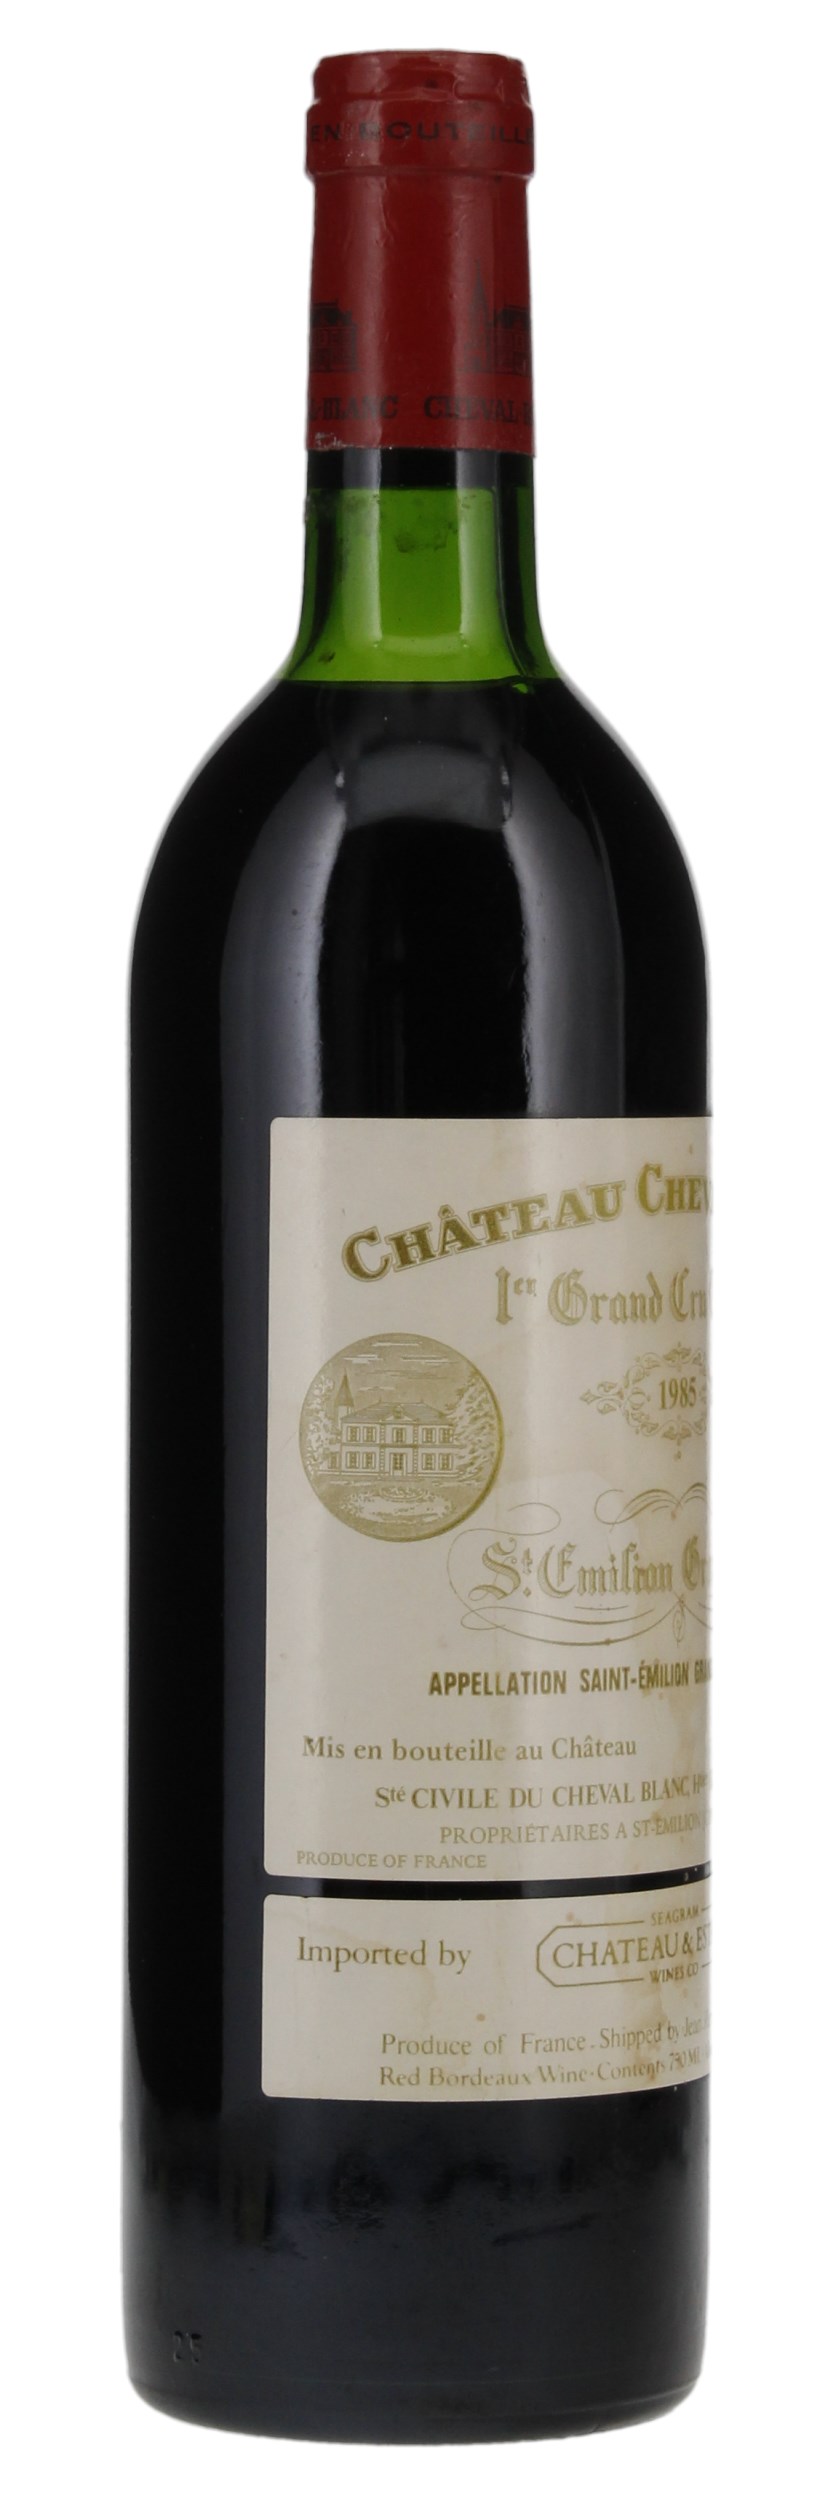 1985 Château Cheval-Blanc, 750ml